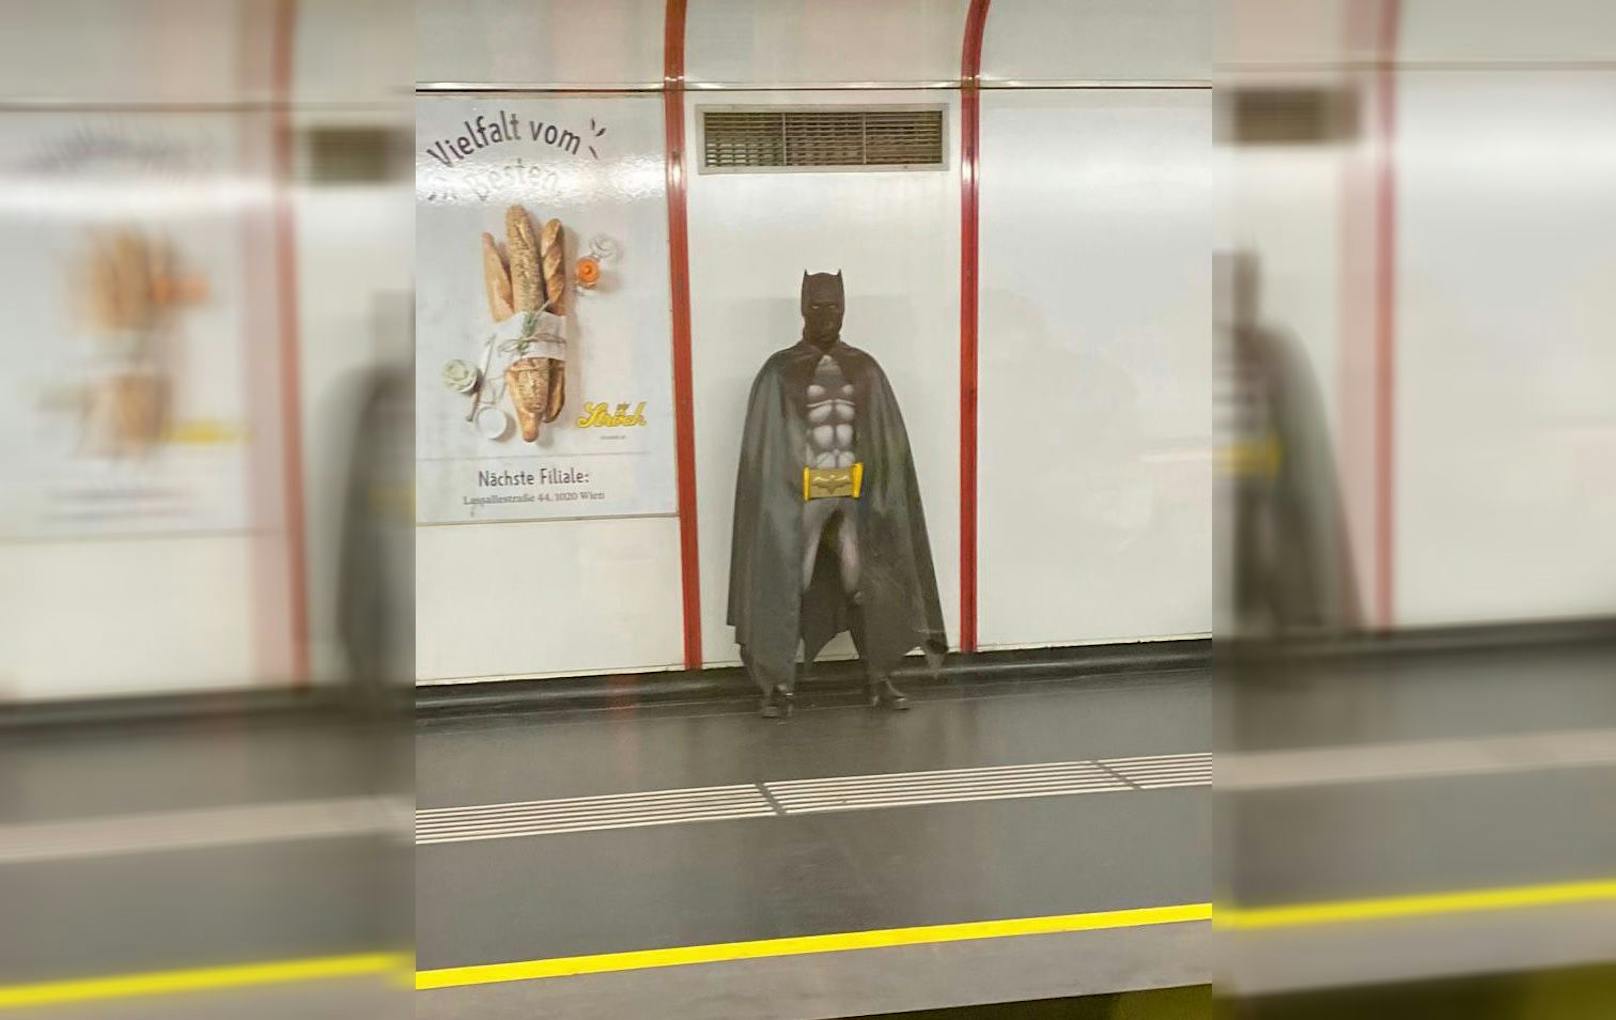 Ein "Batman"-Fan zeigte sich in aller Öffentlichkeit mit kuriosem Erscheinungsbild.